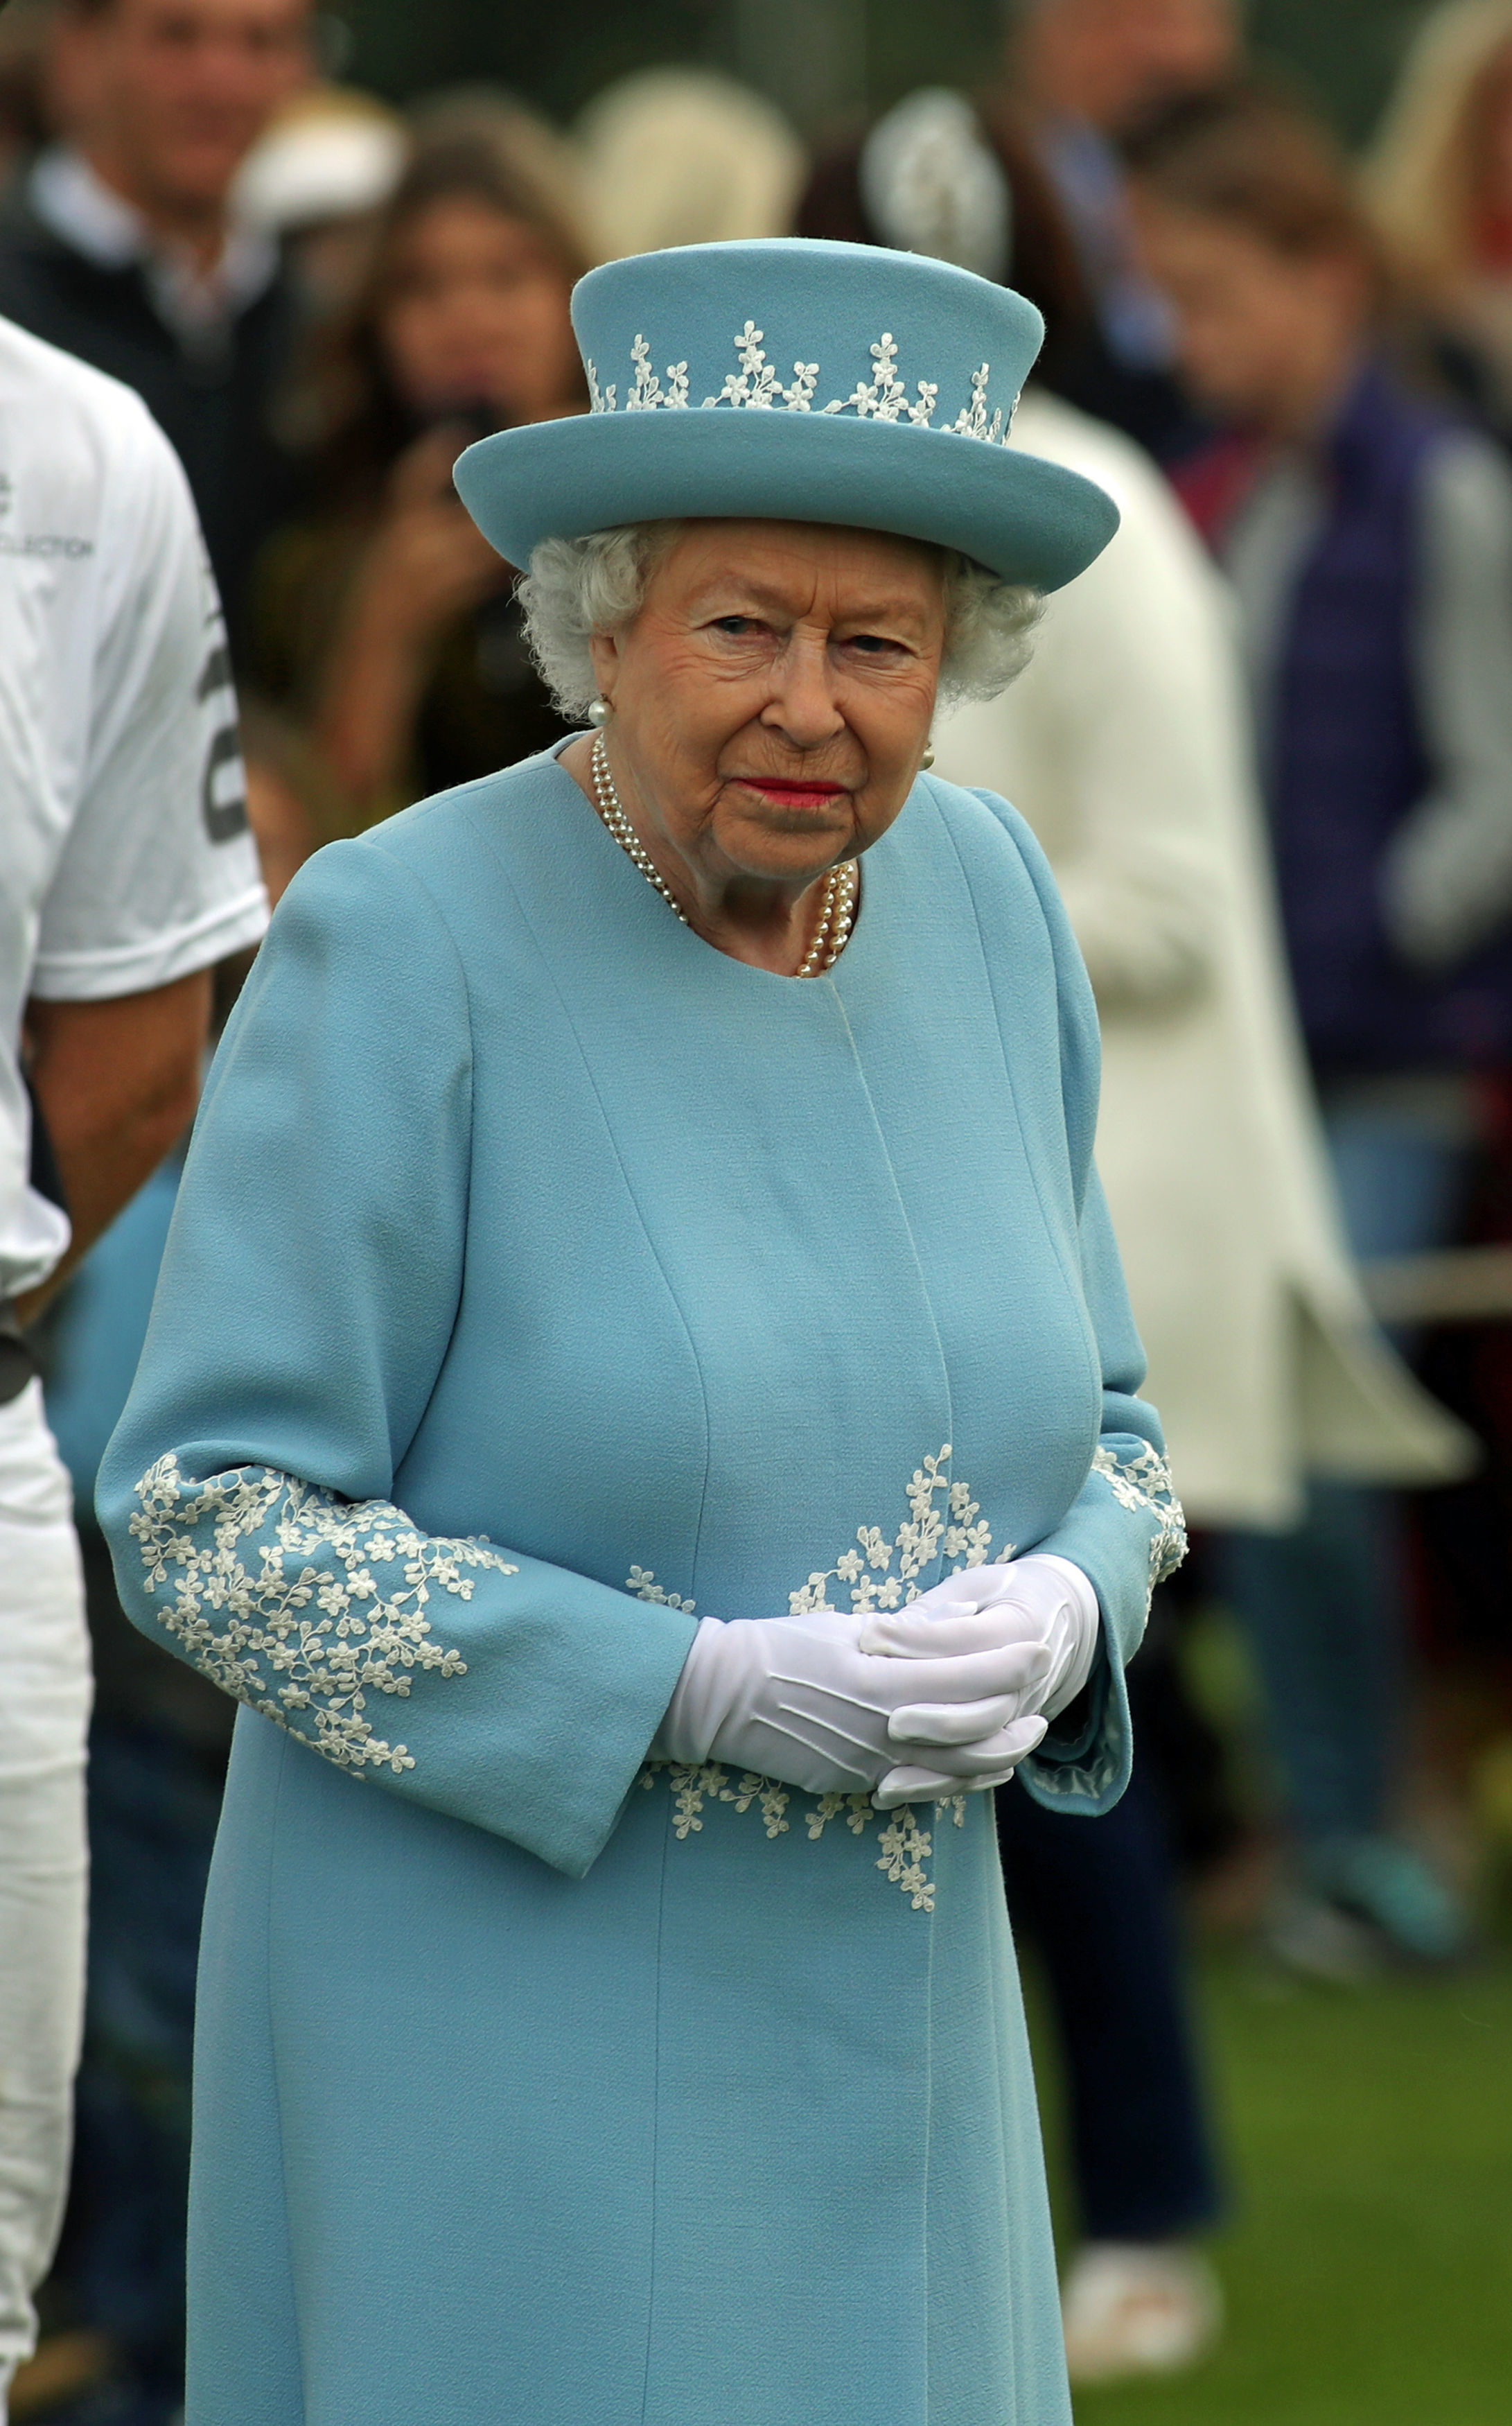 Kiderült: ezért visel Erzsébet királynő élénk színű ruhákat - Blikk